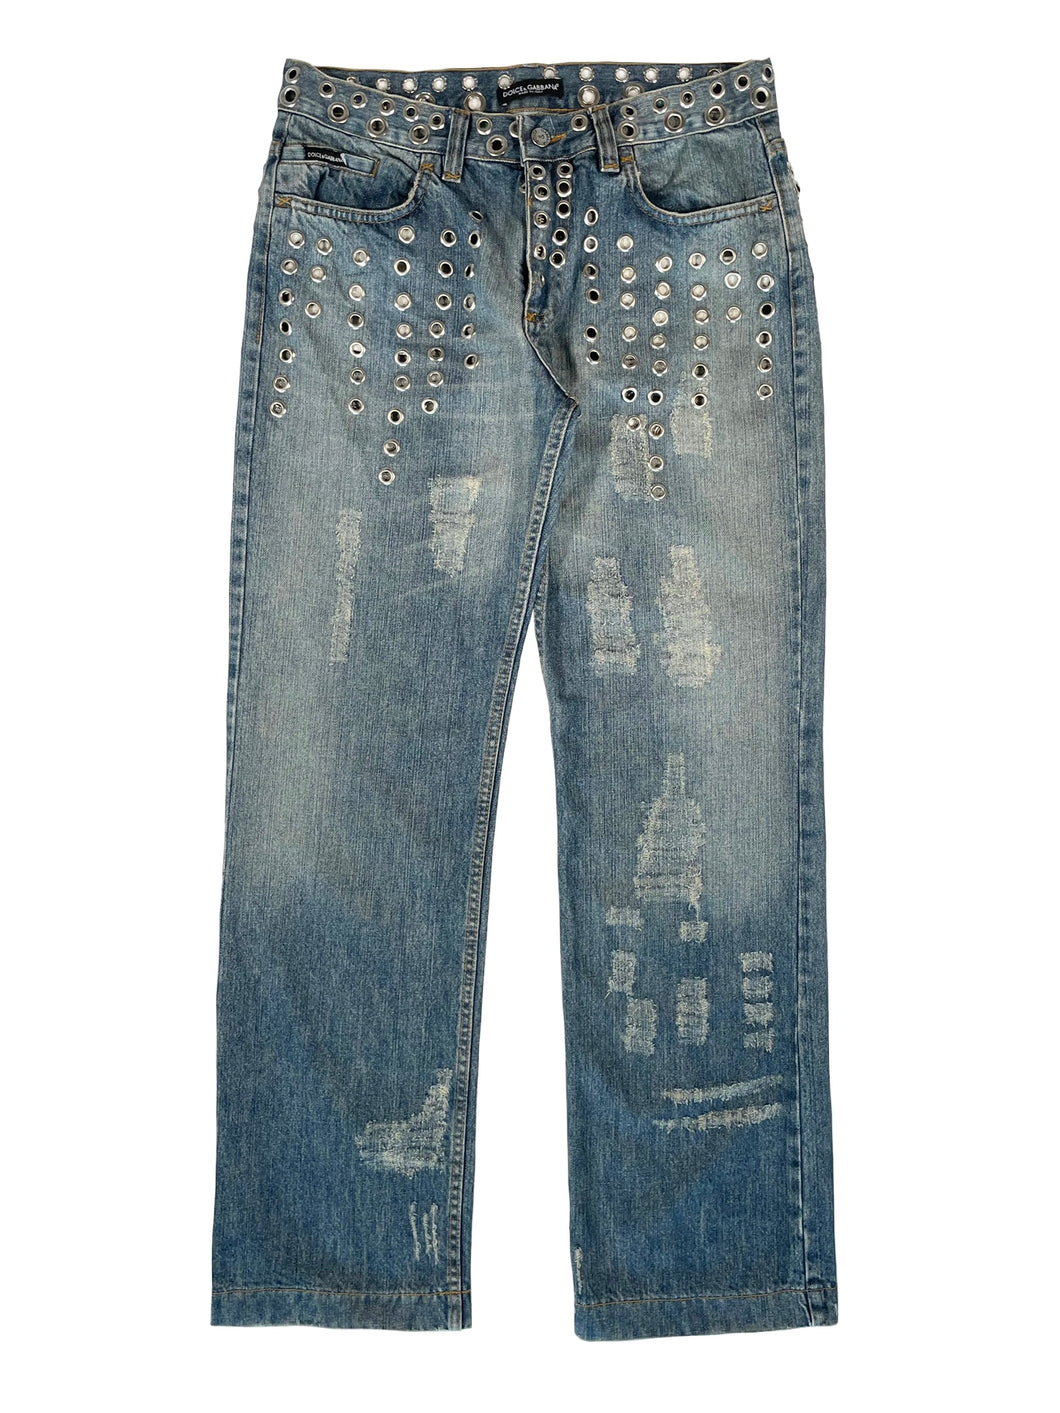 SS2006 Dolce & Gabbana eyelet studded jeans